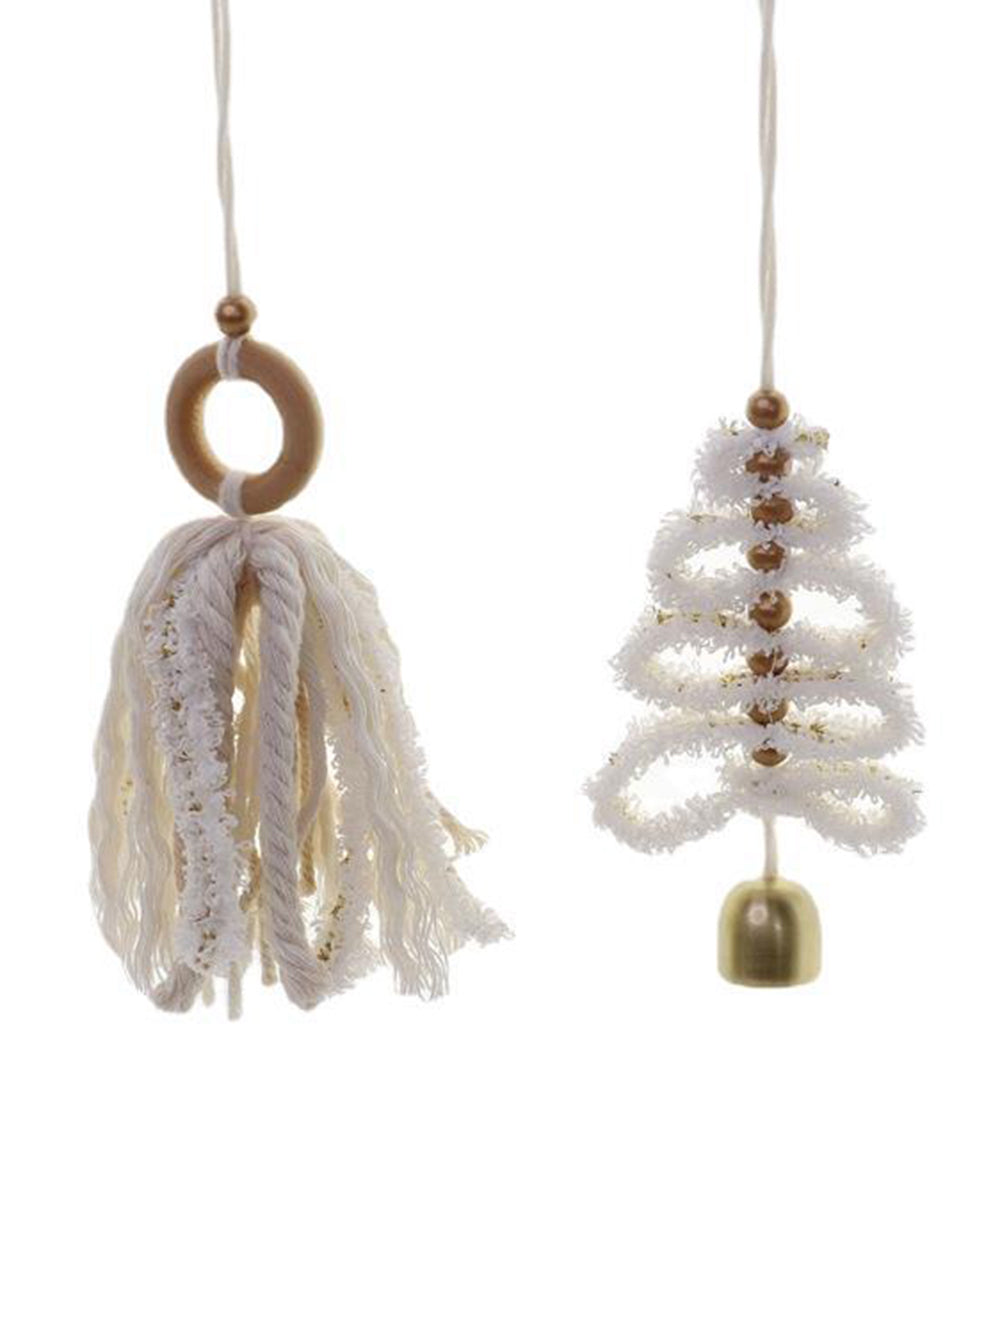 Ornamenti per l'albero di Natale in stile bohémien